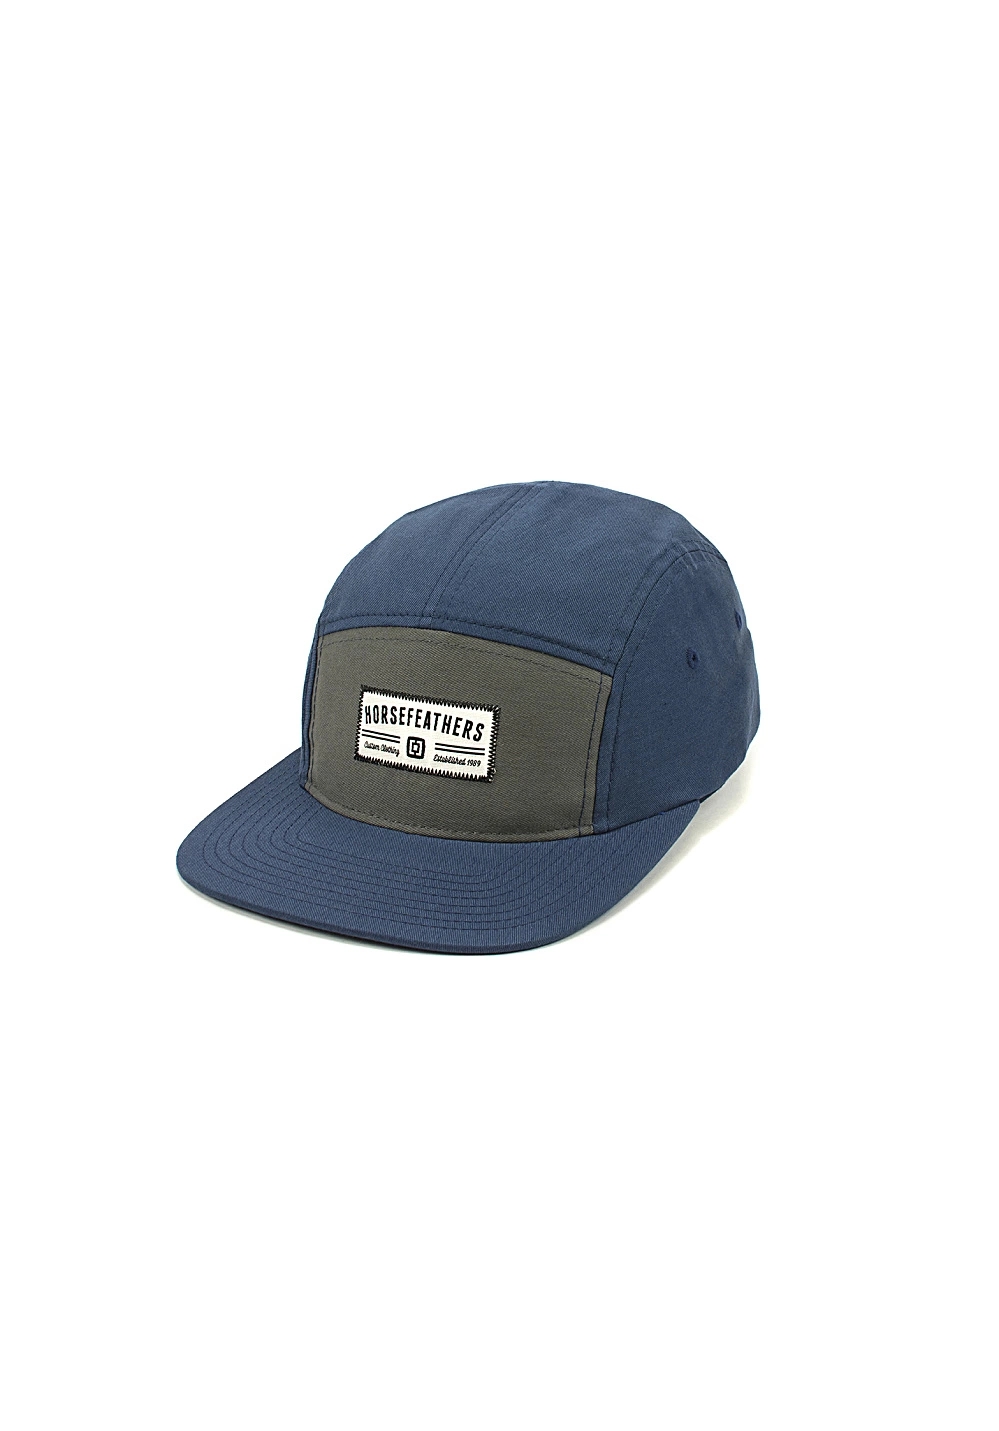 قبعة كامبر الأمريكية للبايسبول مع رقعة منسوجة مخصصة